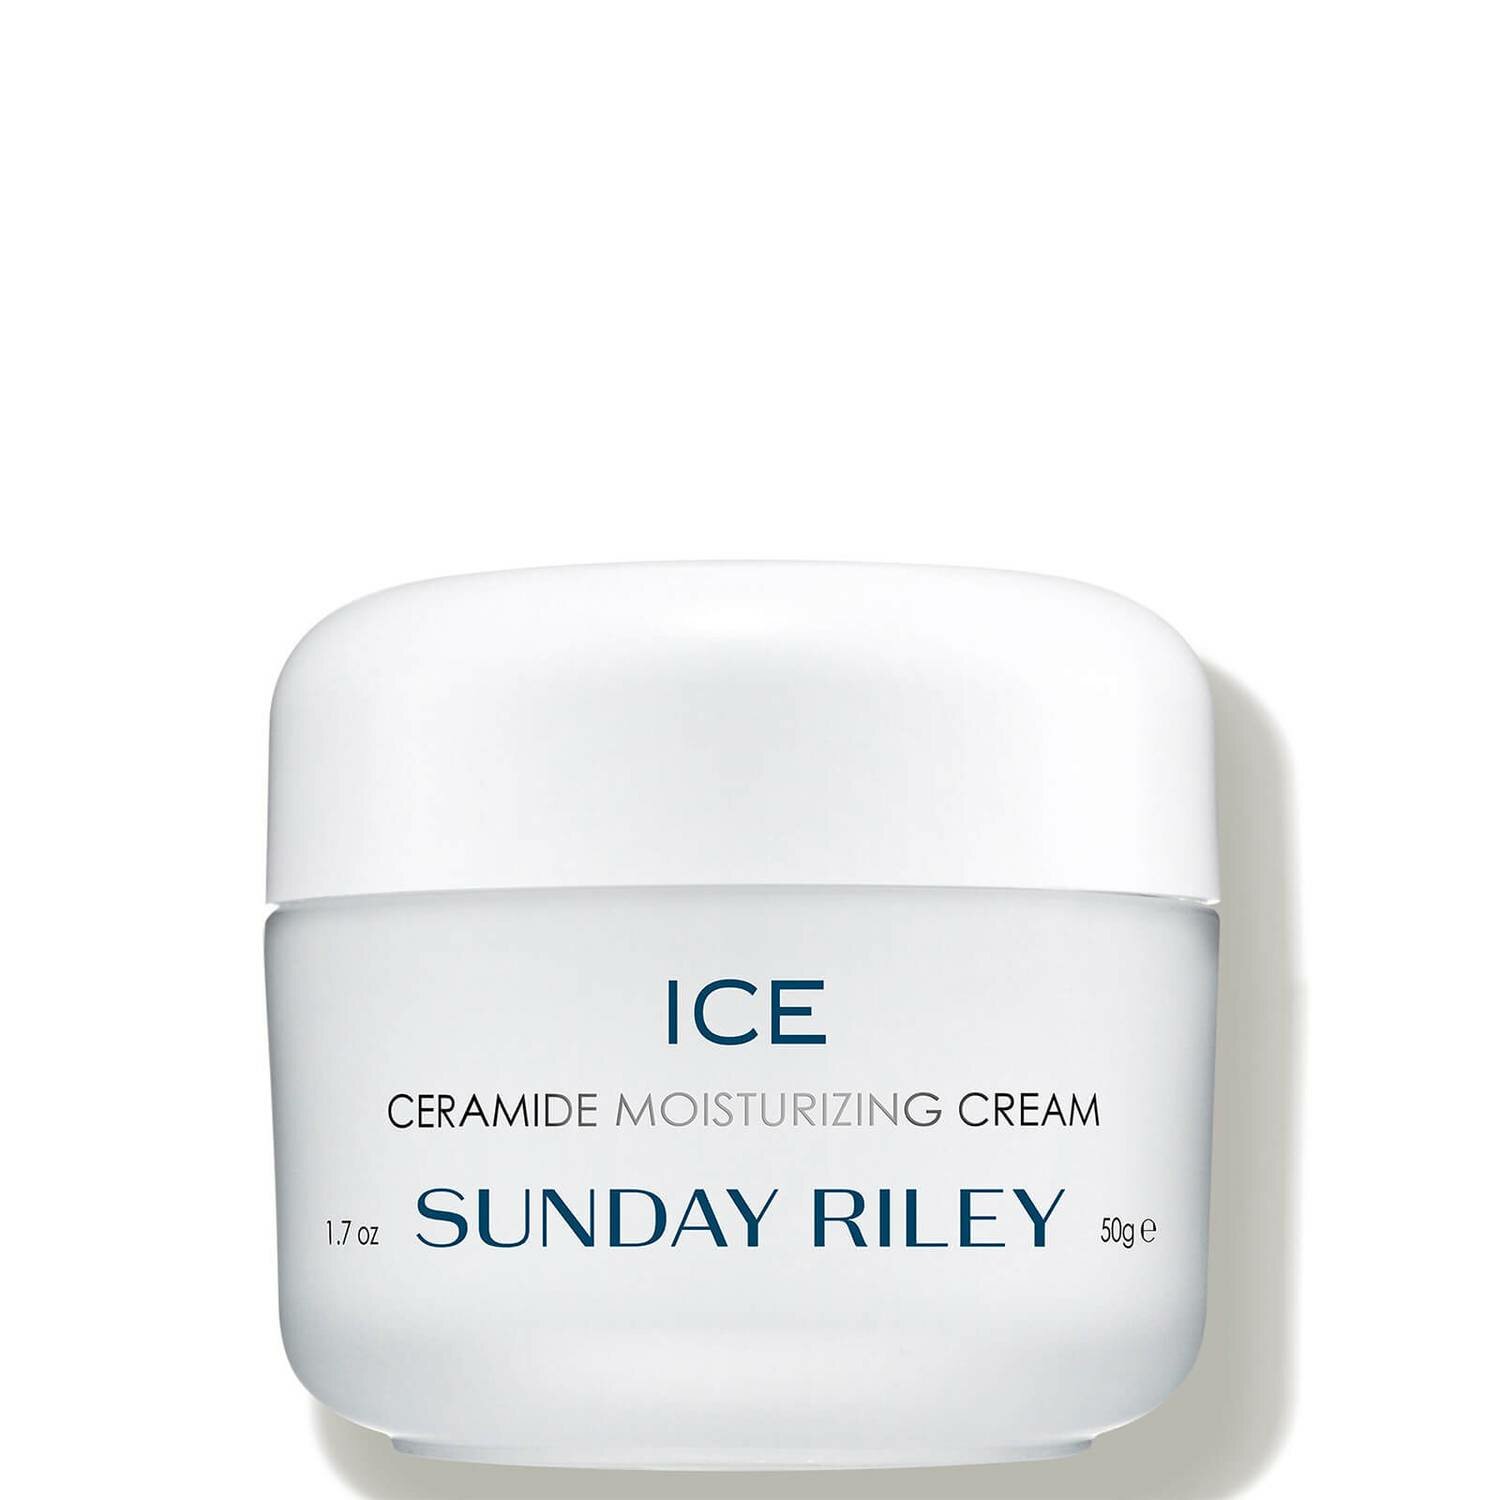 Глубоко увлажняющий крем для лица двойного действия, с керамидами SUNDAY RILEY ICE Ceramide Moisturizing Cream 50g